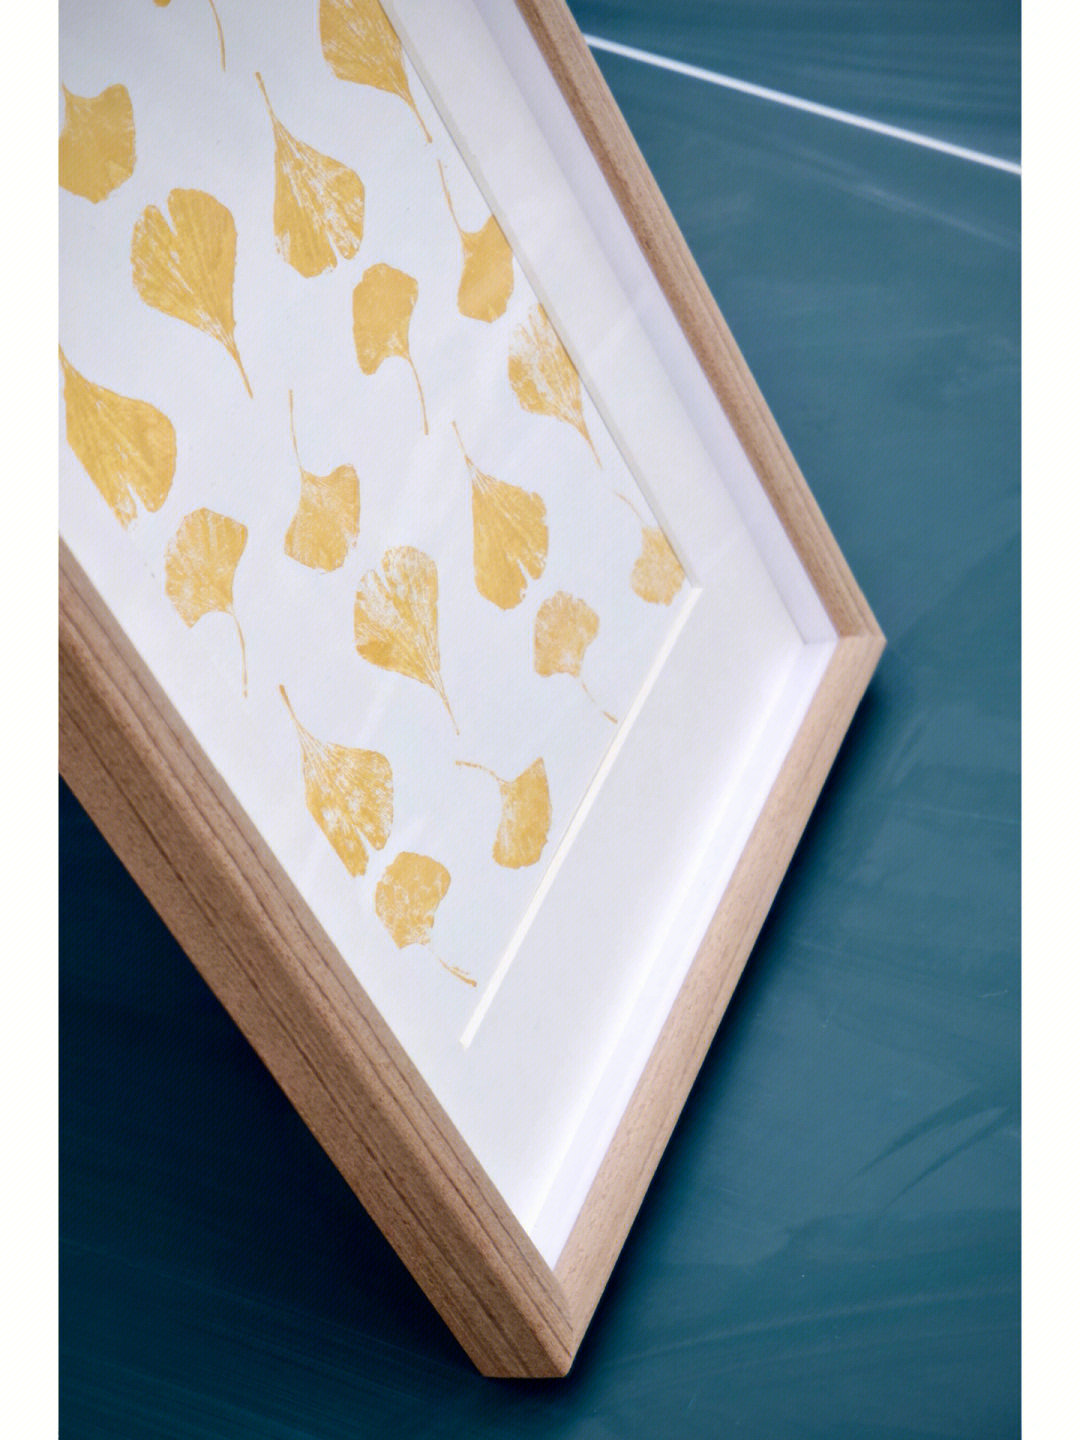 植物装饰画记录银杏叶的纹理和金黄